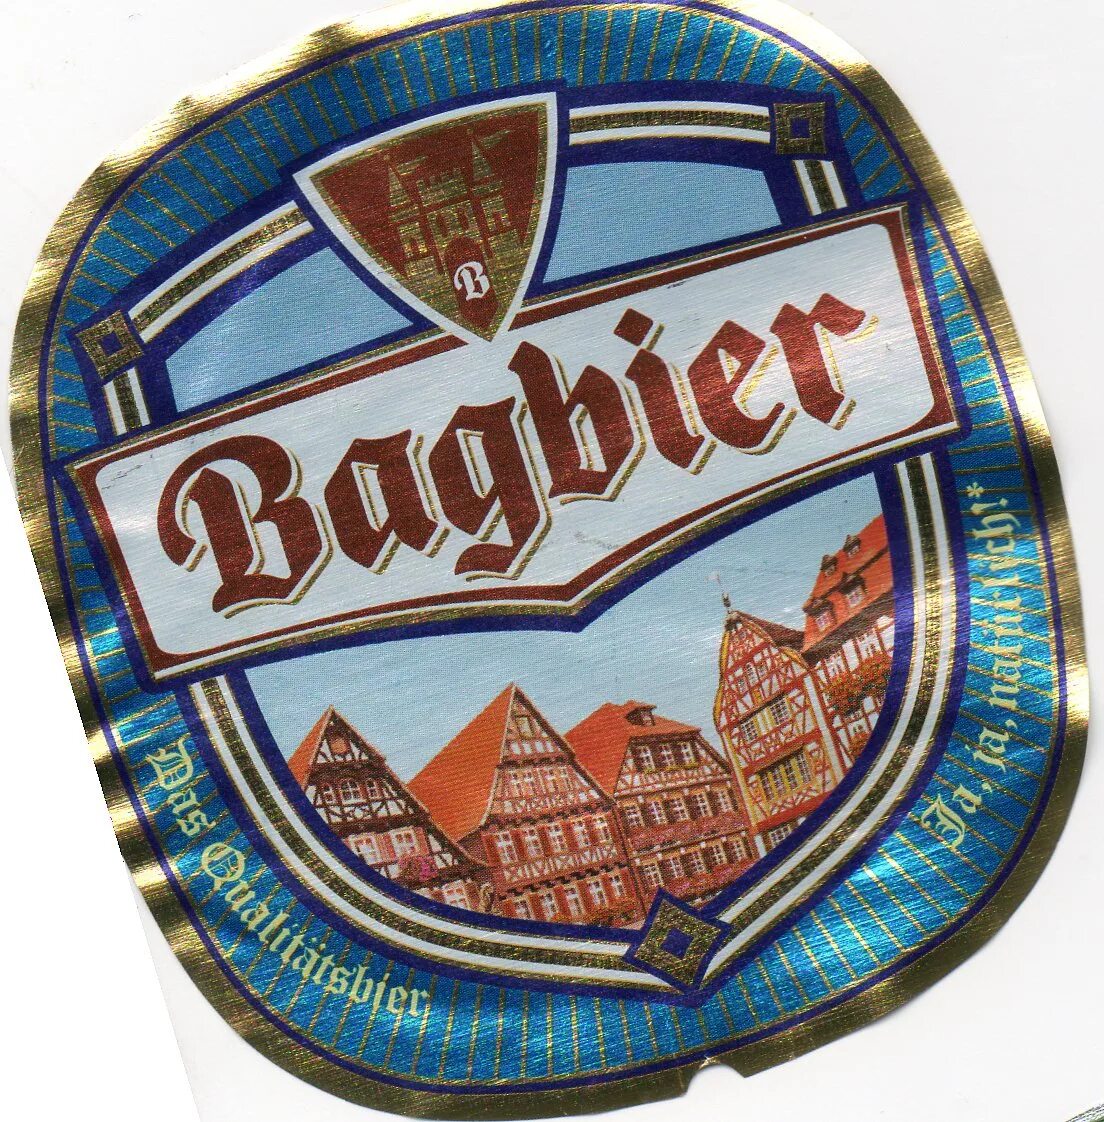 Пиво багбир 5. Пиво багбир 5 литров. Bugbear пиво 5 литров. Пиво Bagbier 5 литров.